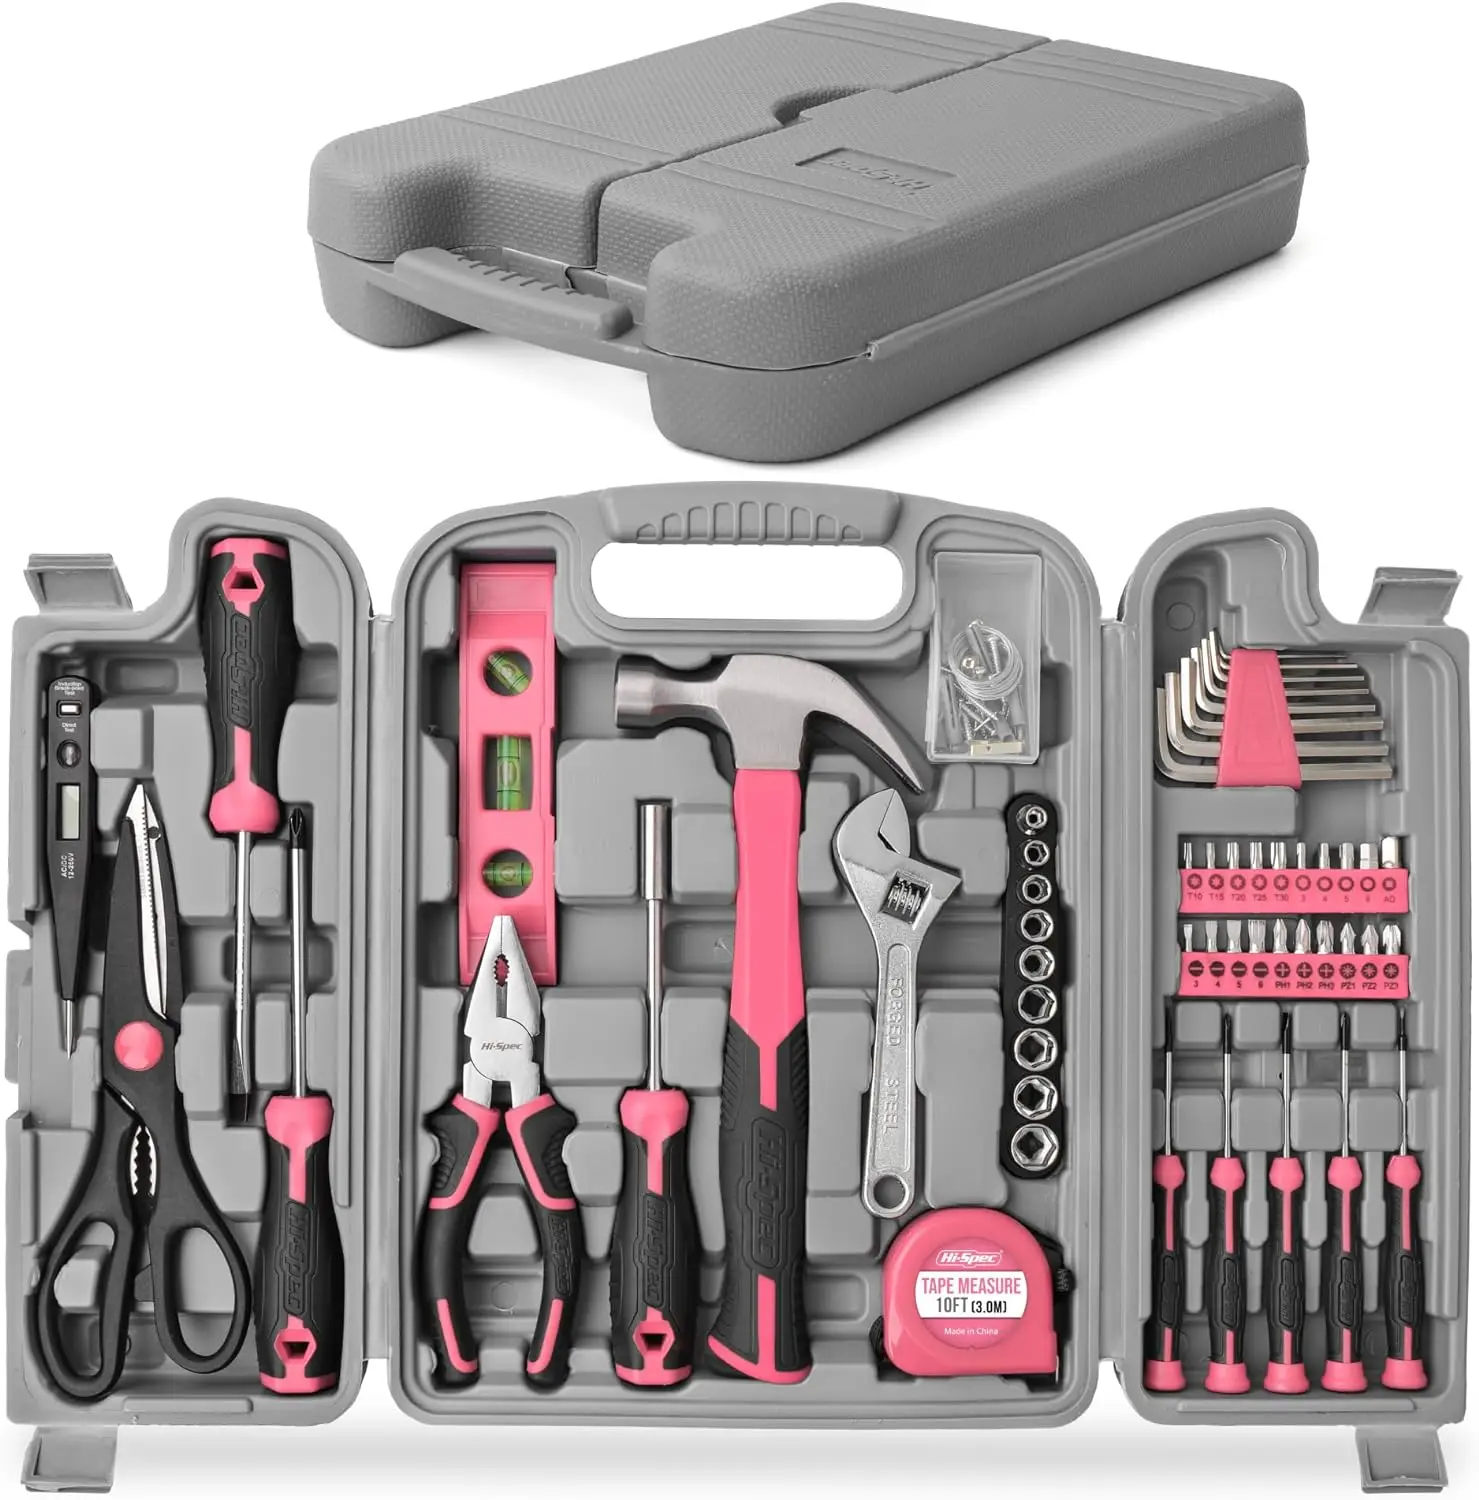 

Hi-Spec 54 Φ стандартная фотография с ящиком для хранения, розовый женский базовый набор инструментов для самостоятельного ремонта для женщин Ho